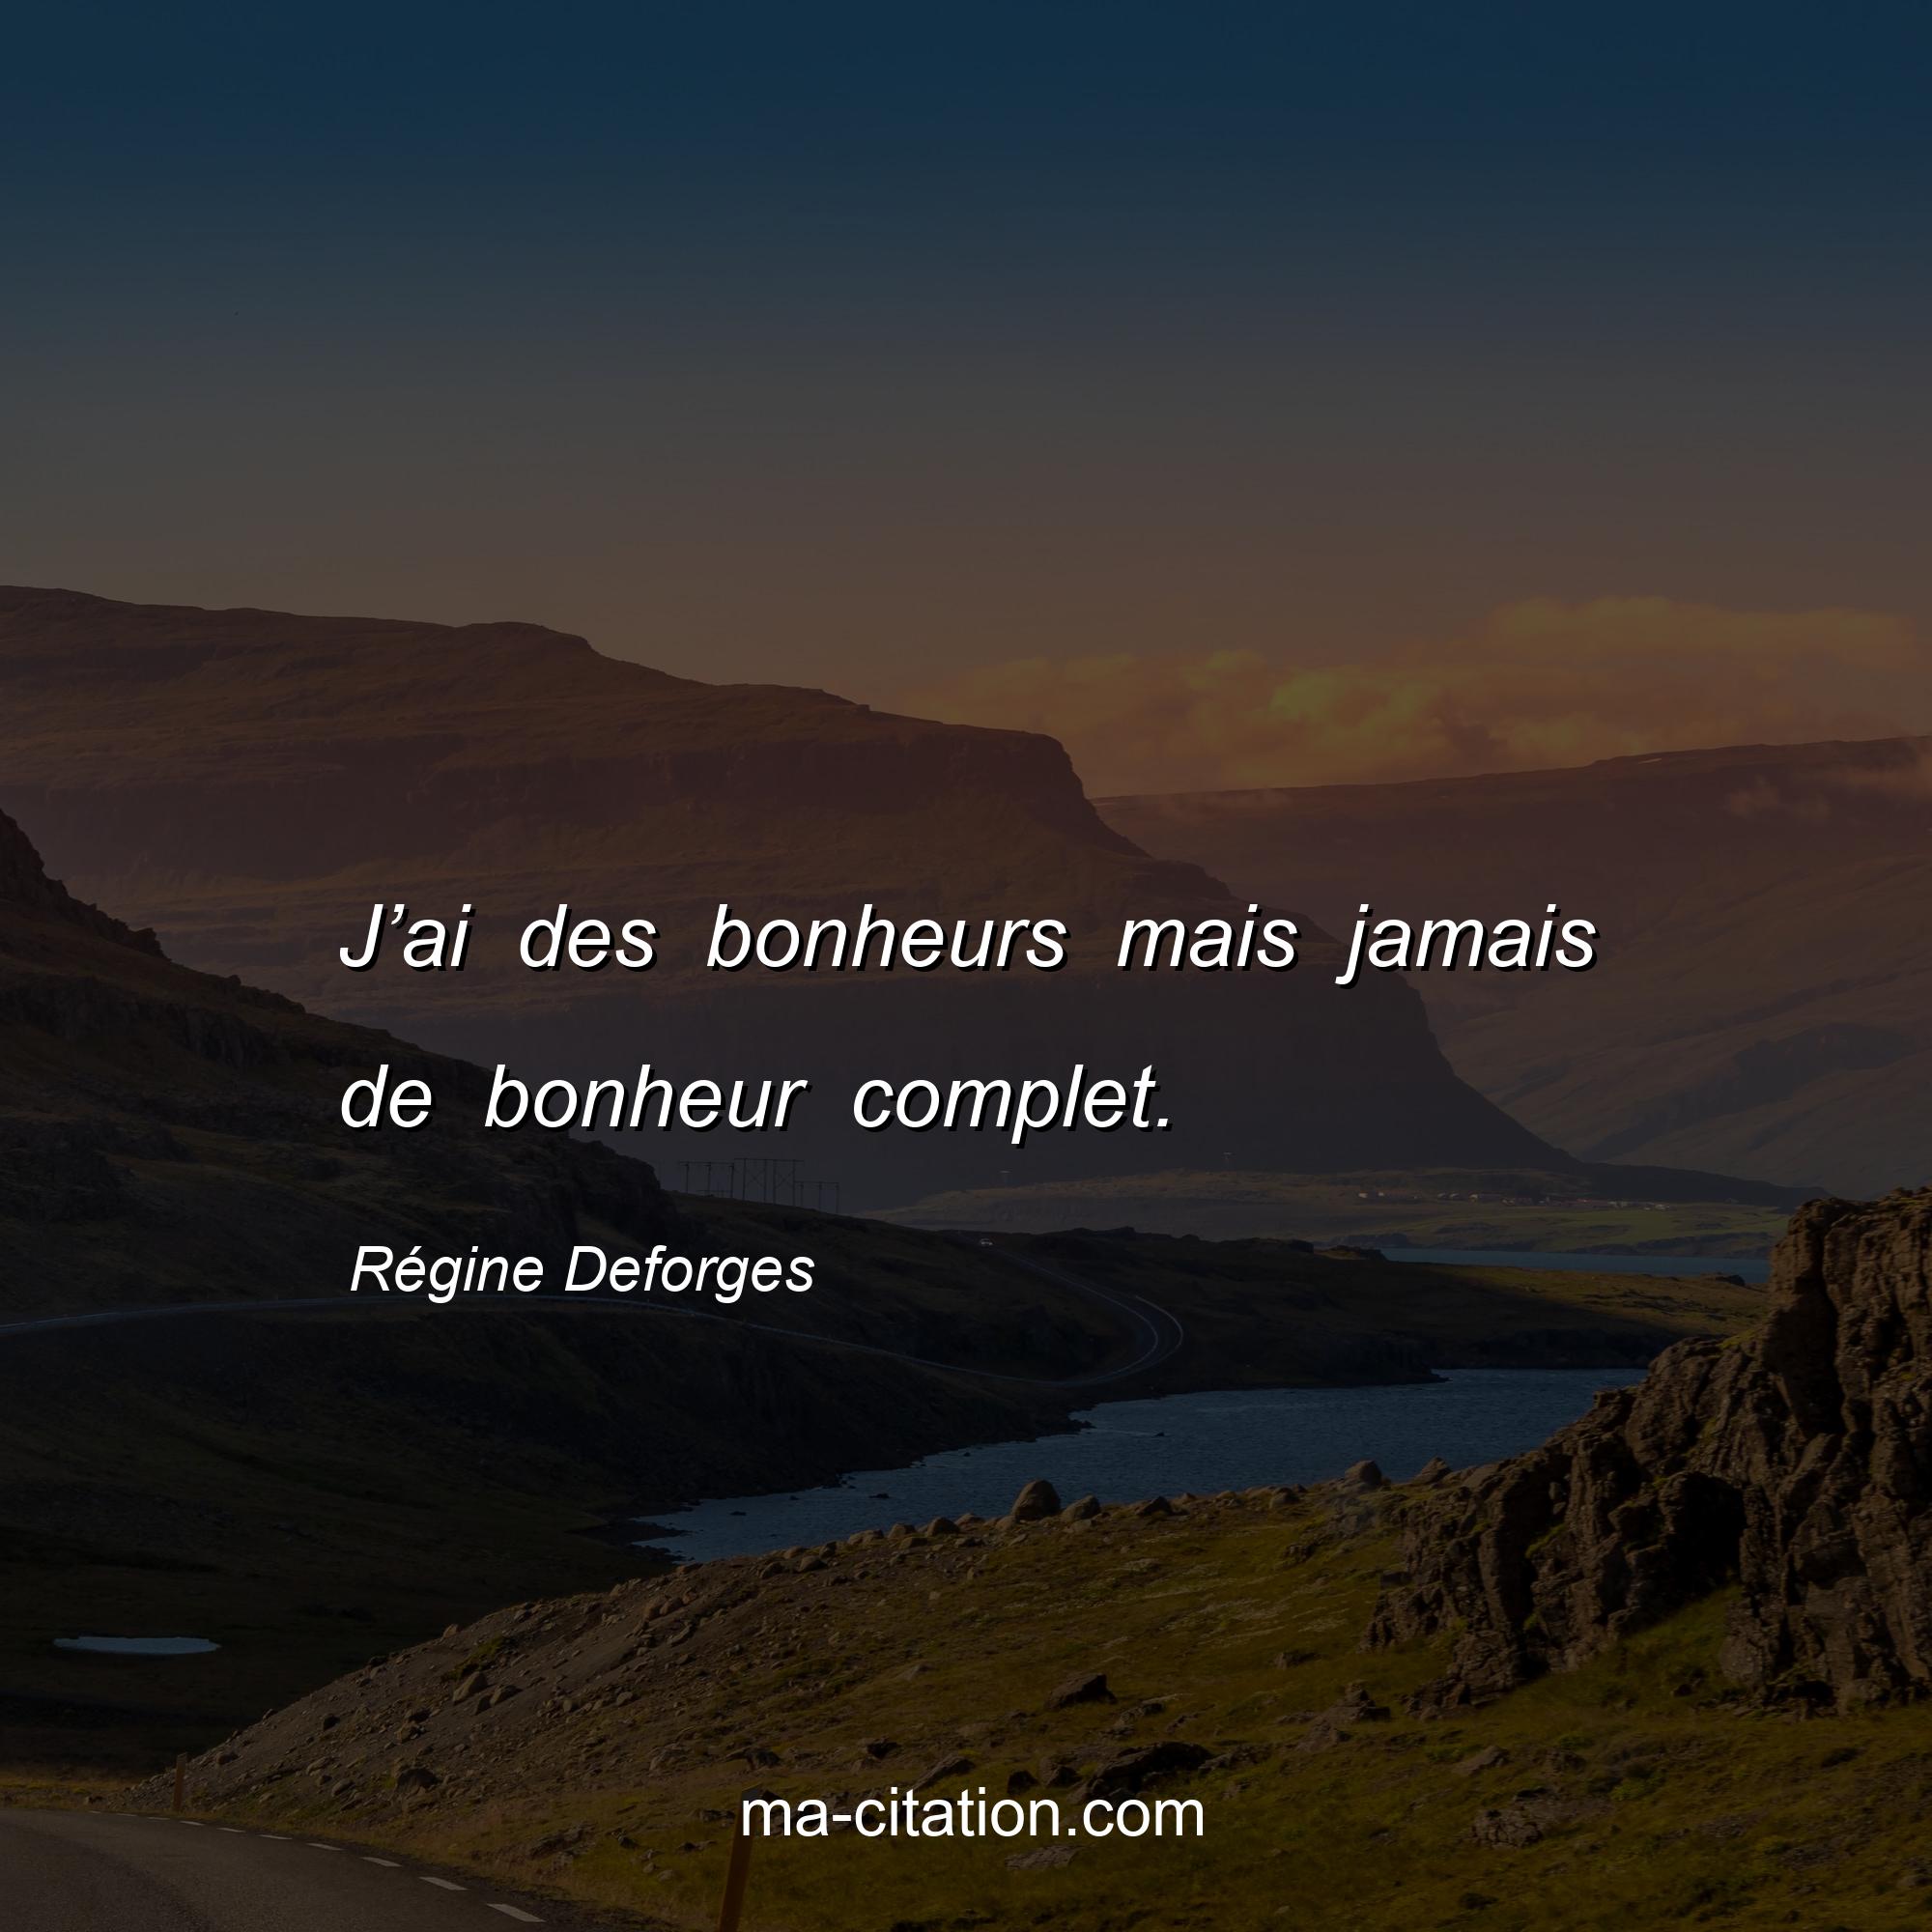 Régine Deforges : J’ai des bonheurs mais jamais de bonheur complet.